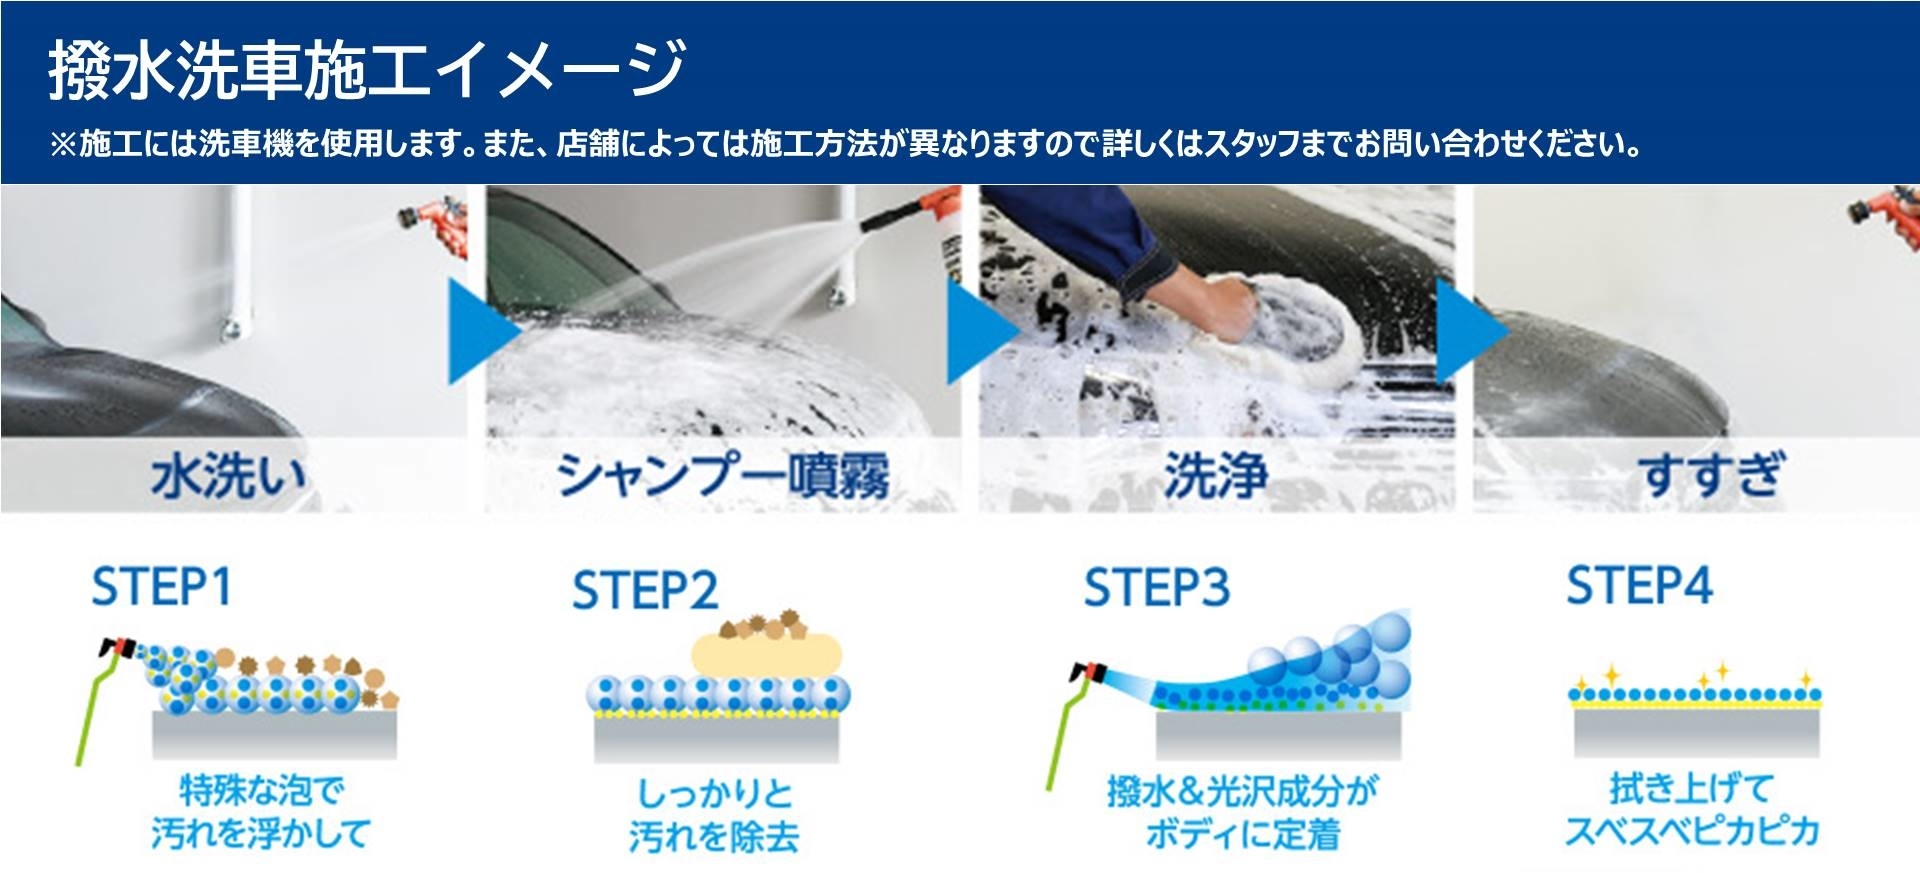 洗車 | トヨタモビリティ東京